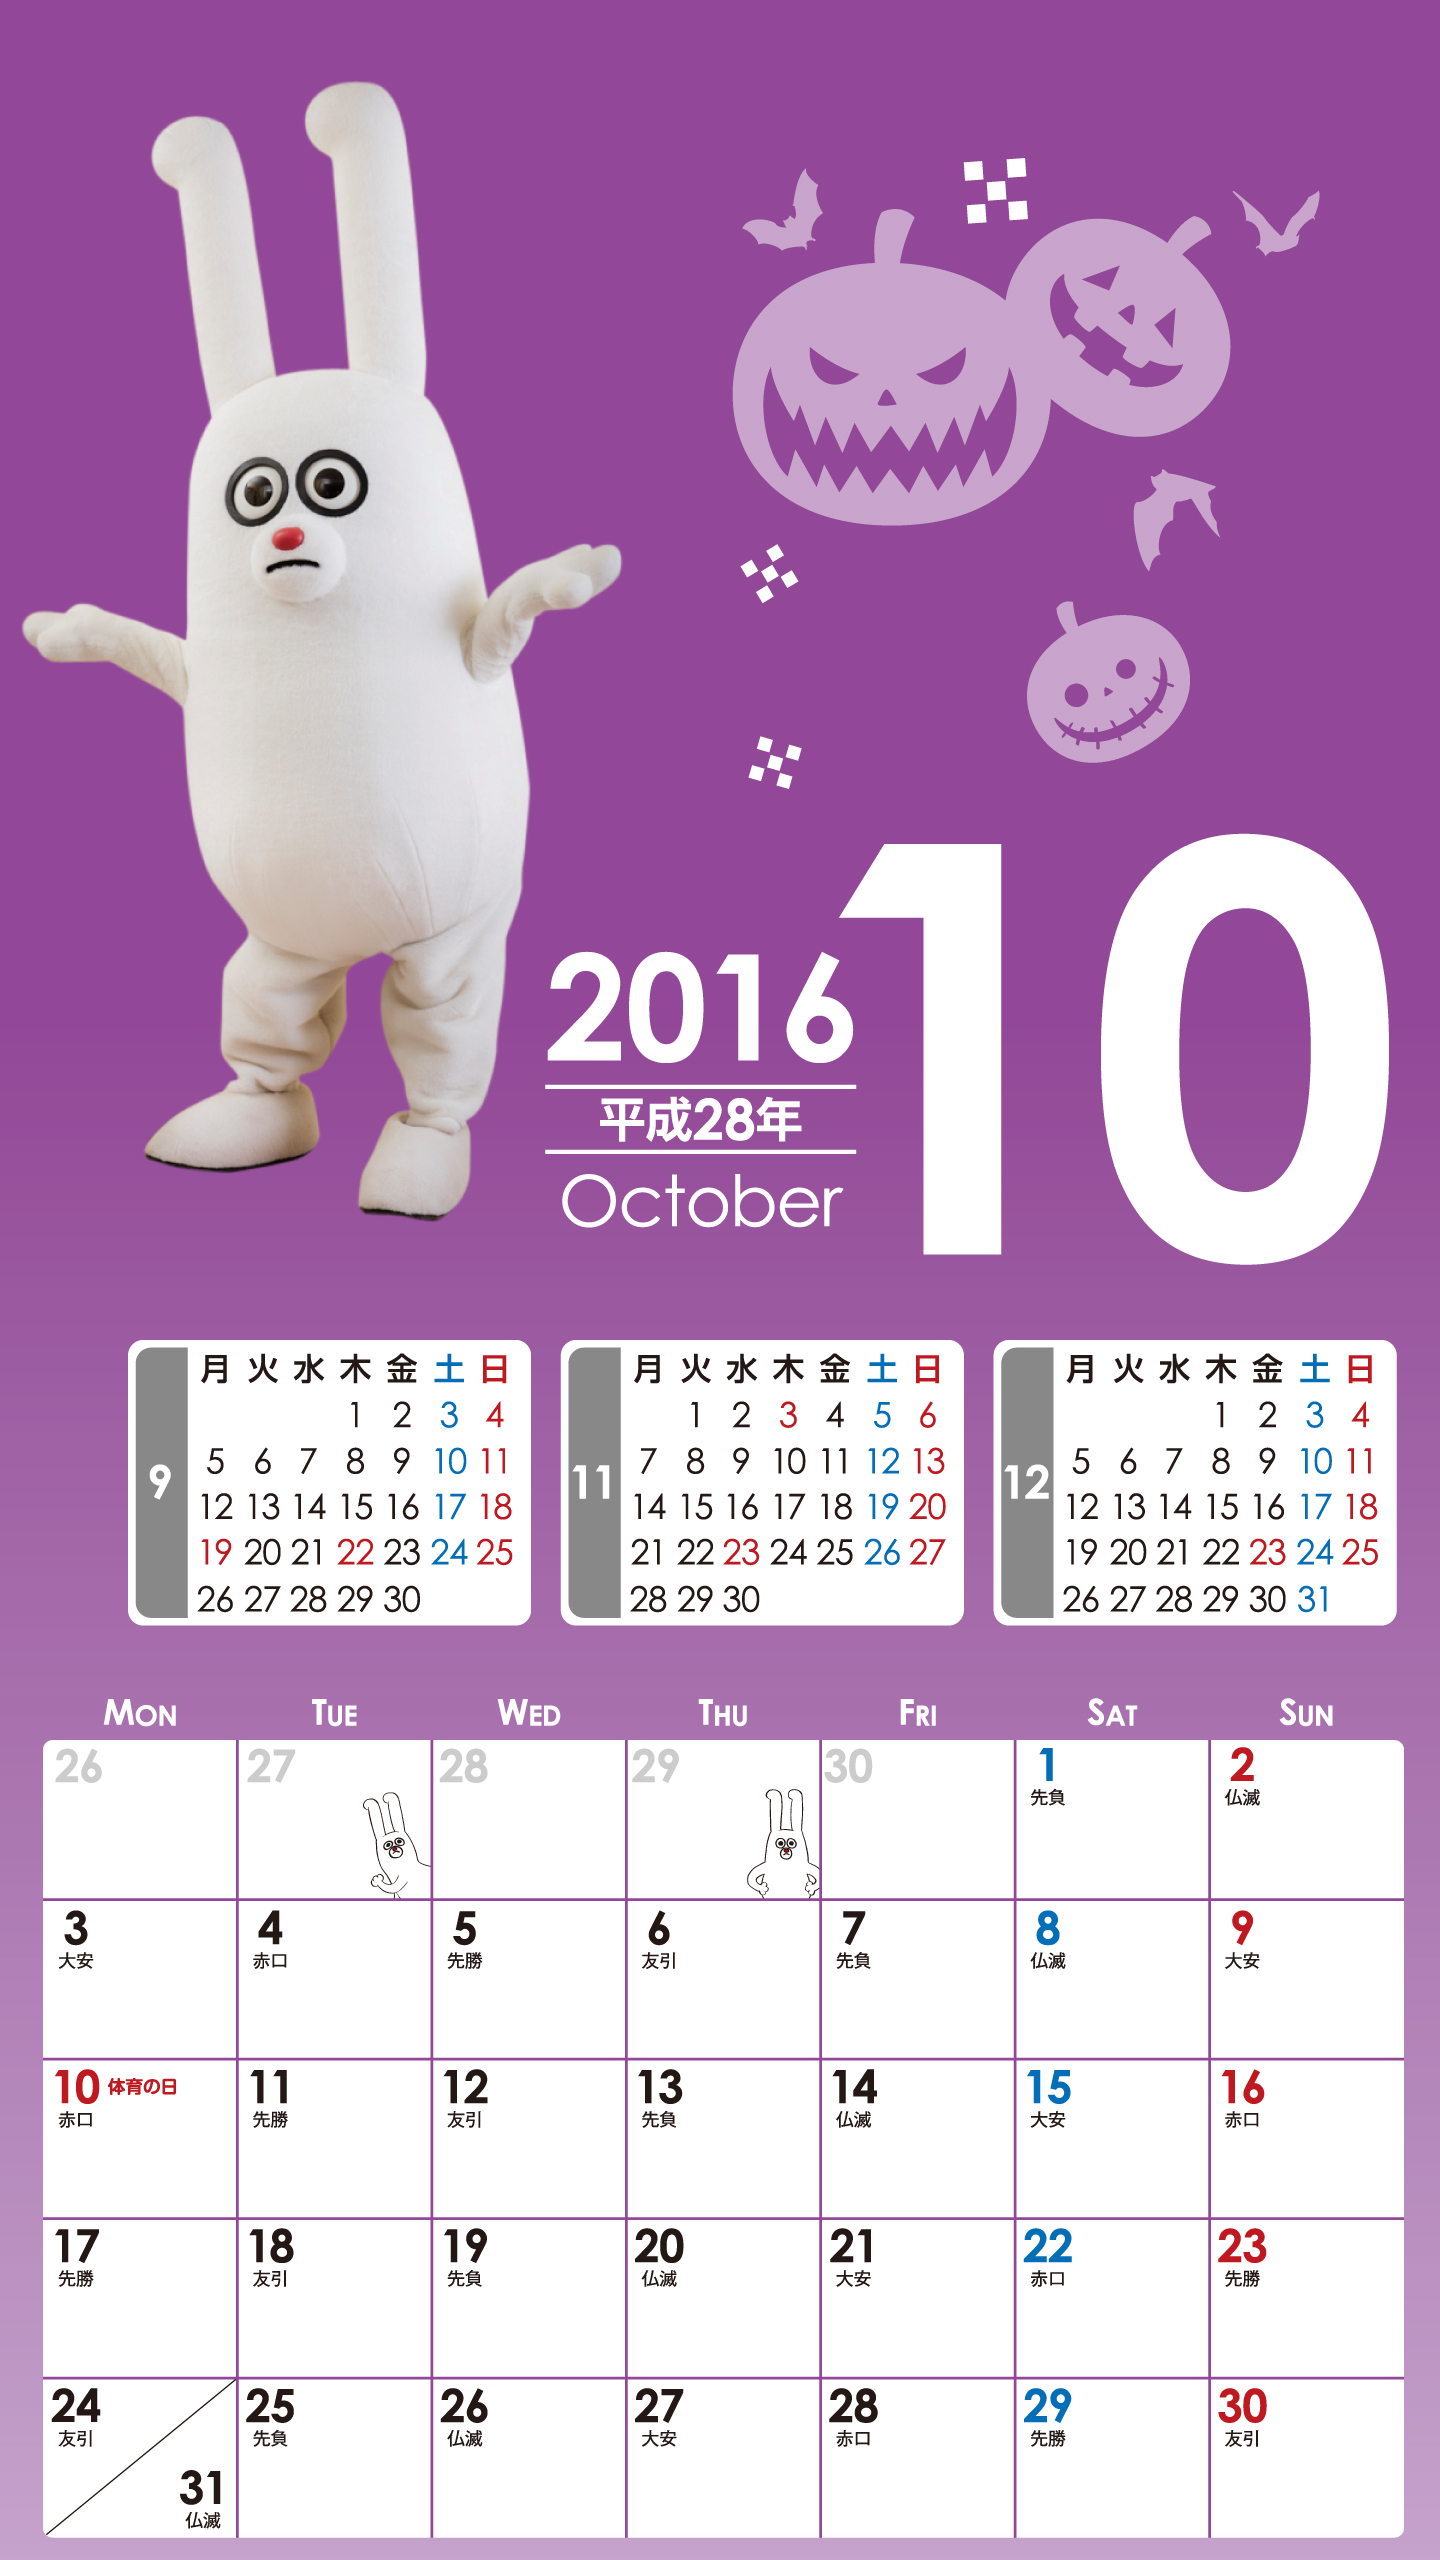 デジタルカレンダー2016年10月 Bs11 イレブン いつでも無料放送